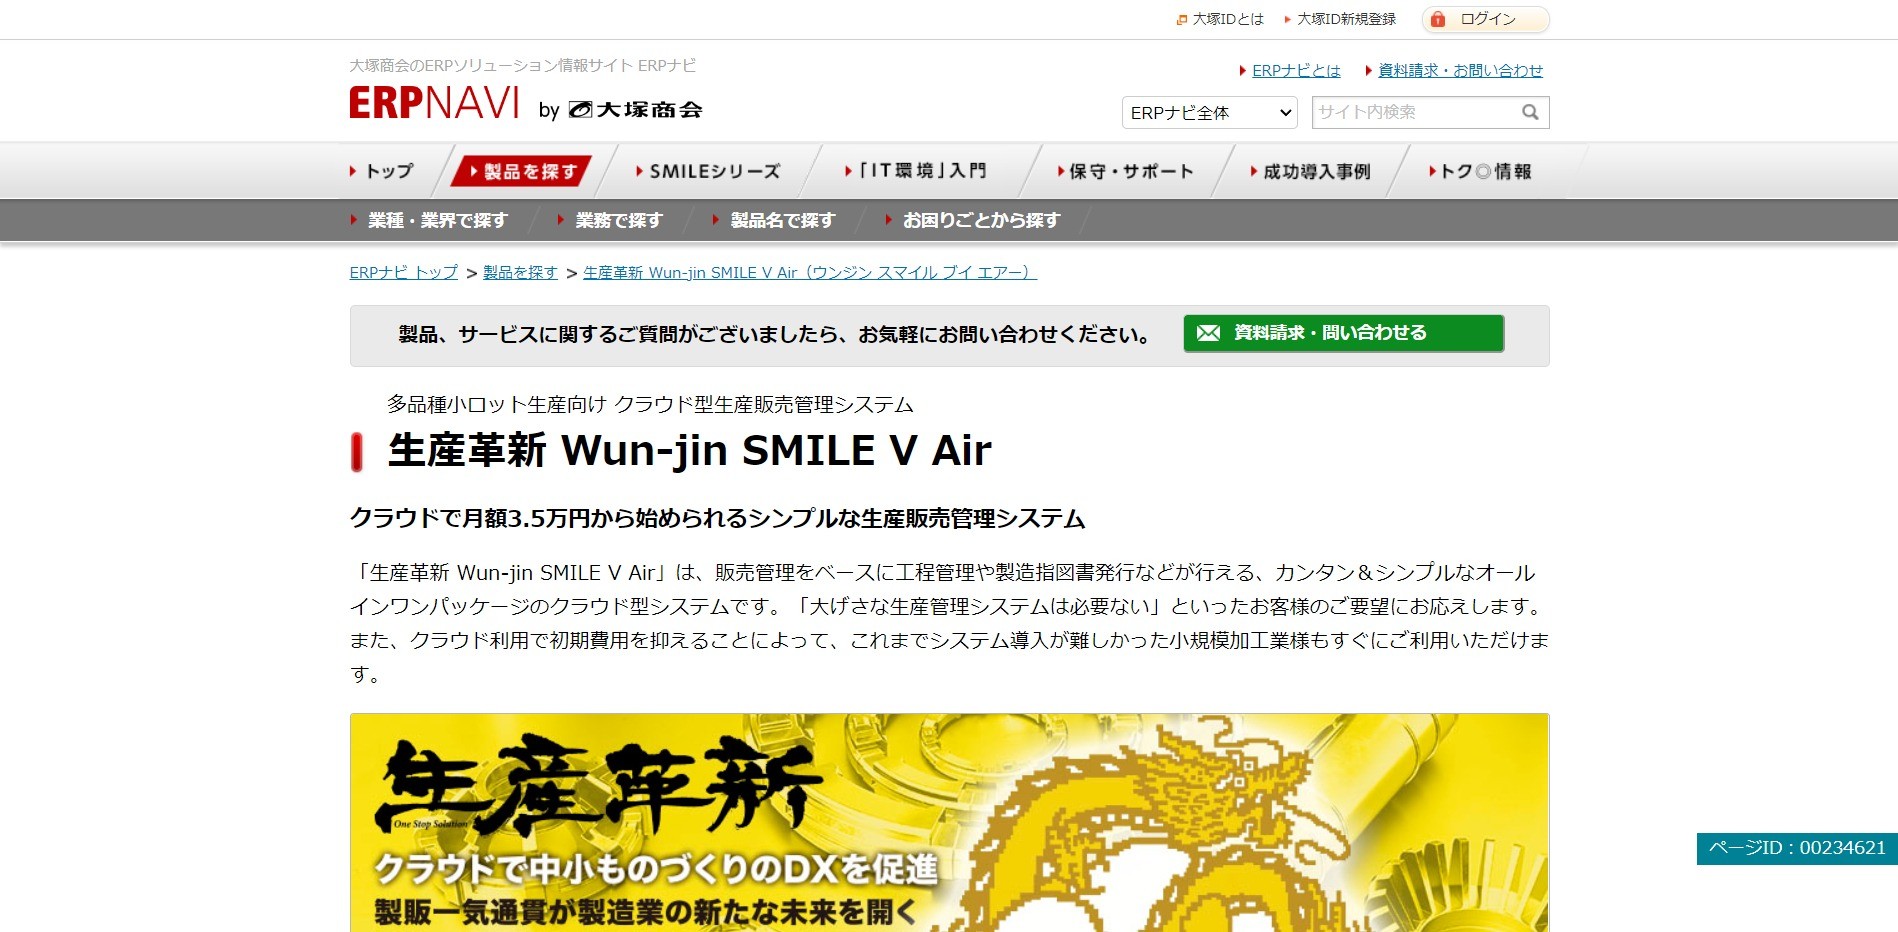 生産革新 Wun-jin SMILE V Air公式ページ